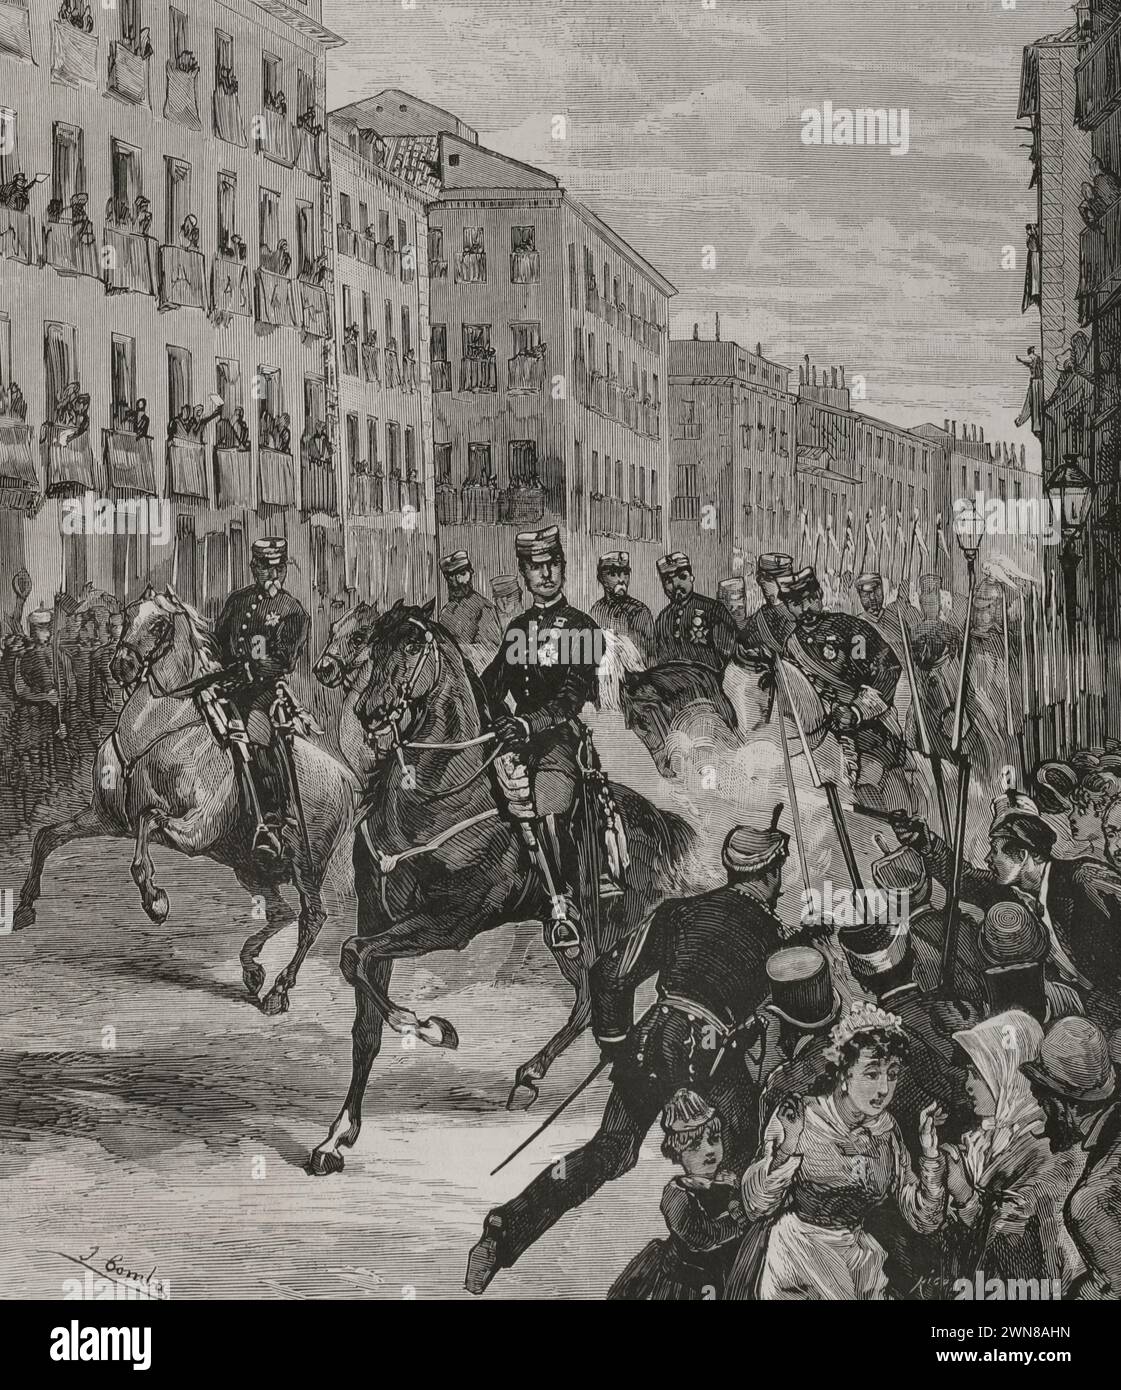 Alfonso XII (1857-1885). König von Spanien (1875-1885). Madrid, 25. Oktober 1878. Erster Anschlag auf Alfonso XII. Juan Oliva Moncusí (1855–1879), ein junger cooper, feuerte einen Pistolenschuss auf den König in der calle Mayor (Hauptstraße) ab, als er durch die Straßen Madrids zog, als er von seiner Reise in den Norden Spaniens zurückkehrte. Der König wurde durch den Angriff unversehrt. Zeichnung von Juan Comba. Gravur von Rico. La Ilustración Española y Americana (die spanische und amerikanische Illustration), 1878. Stockfoto